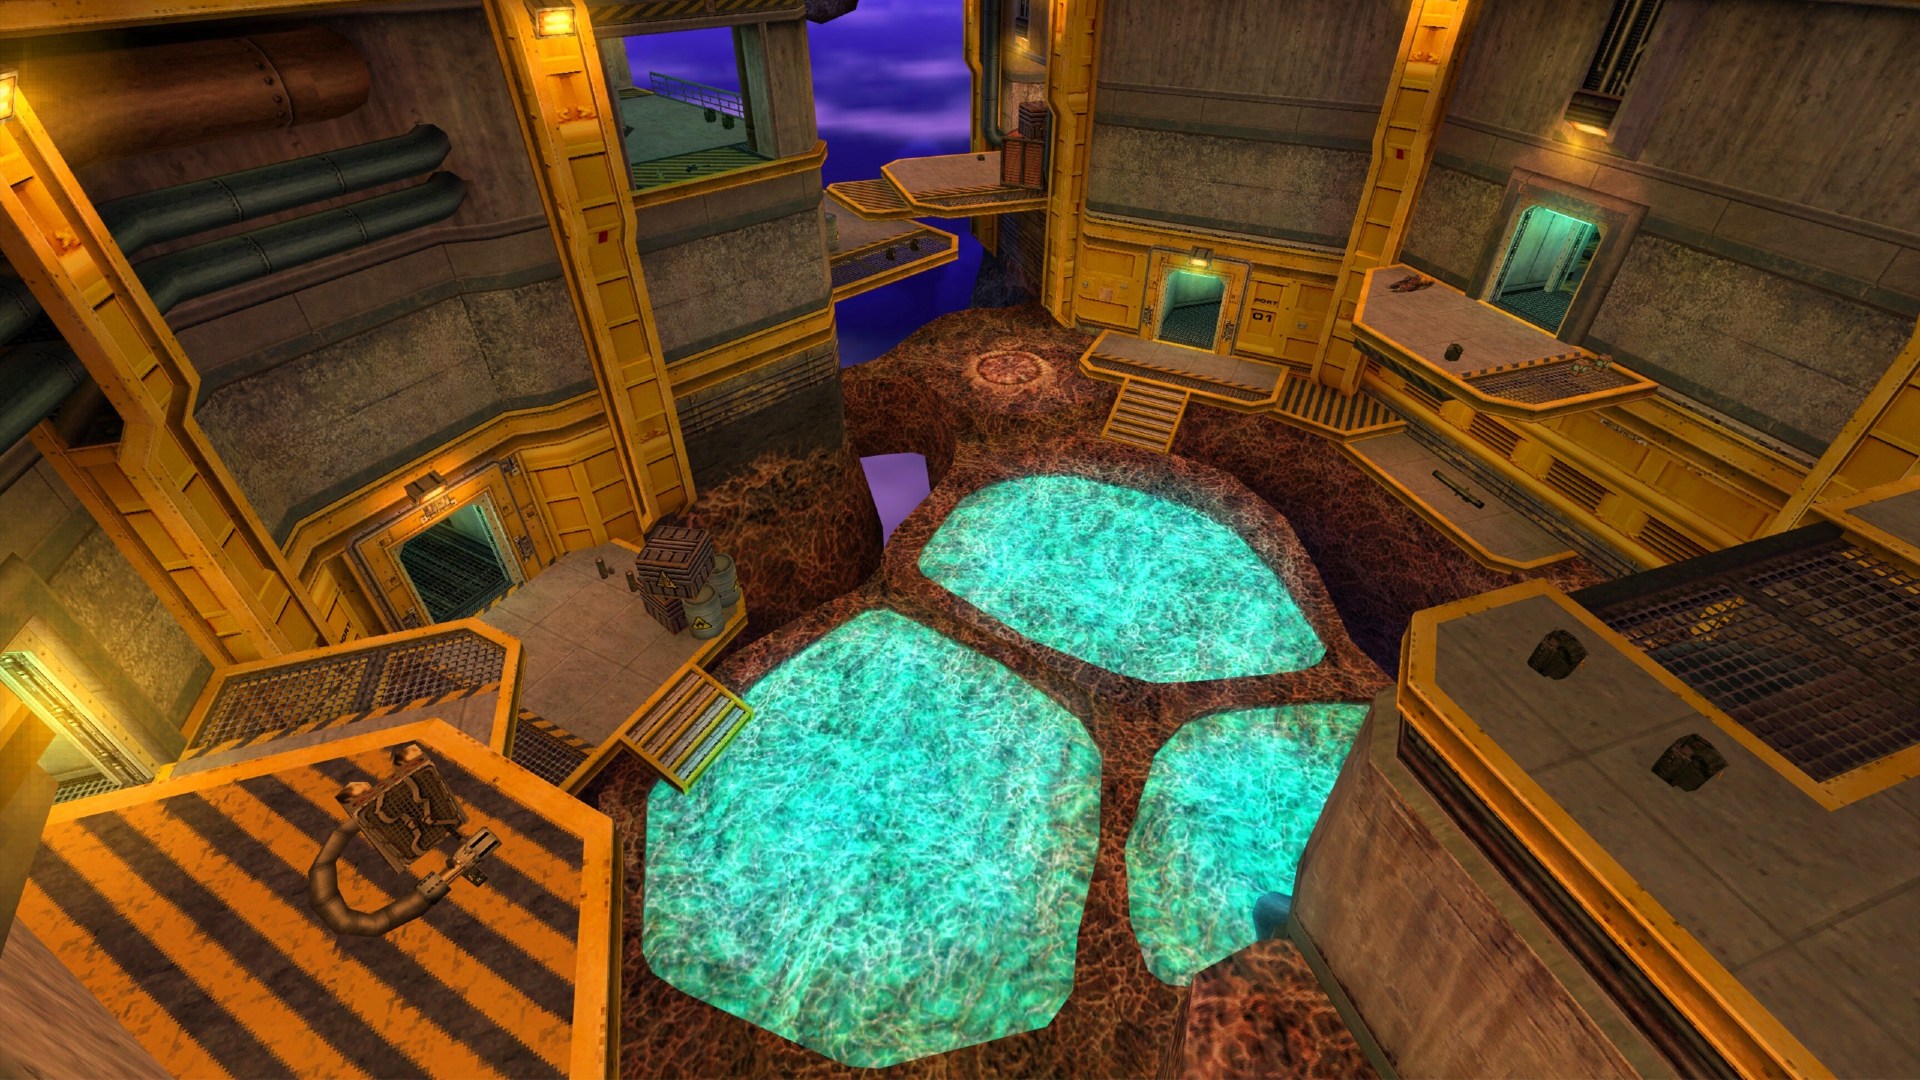 Mapa de la fiesta en la piscina de Half-Life que muestra el interior de una instalación que aparentemente flota en un espacio violeta